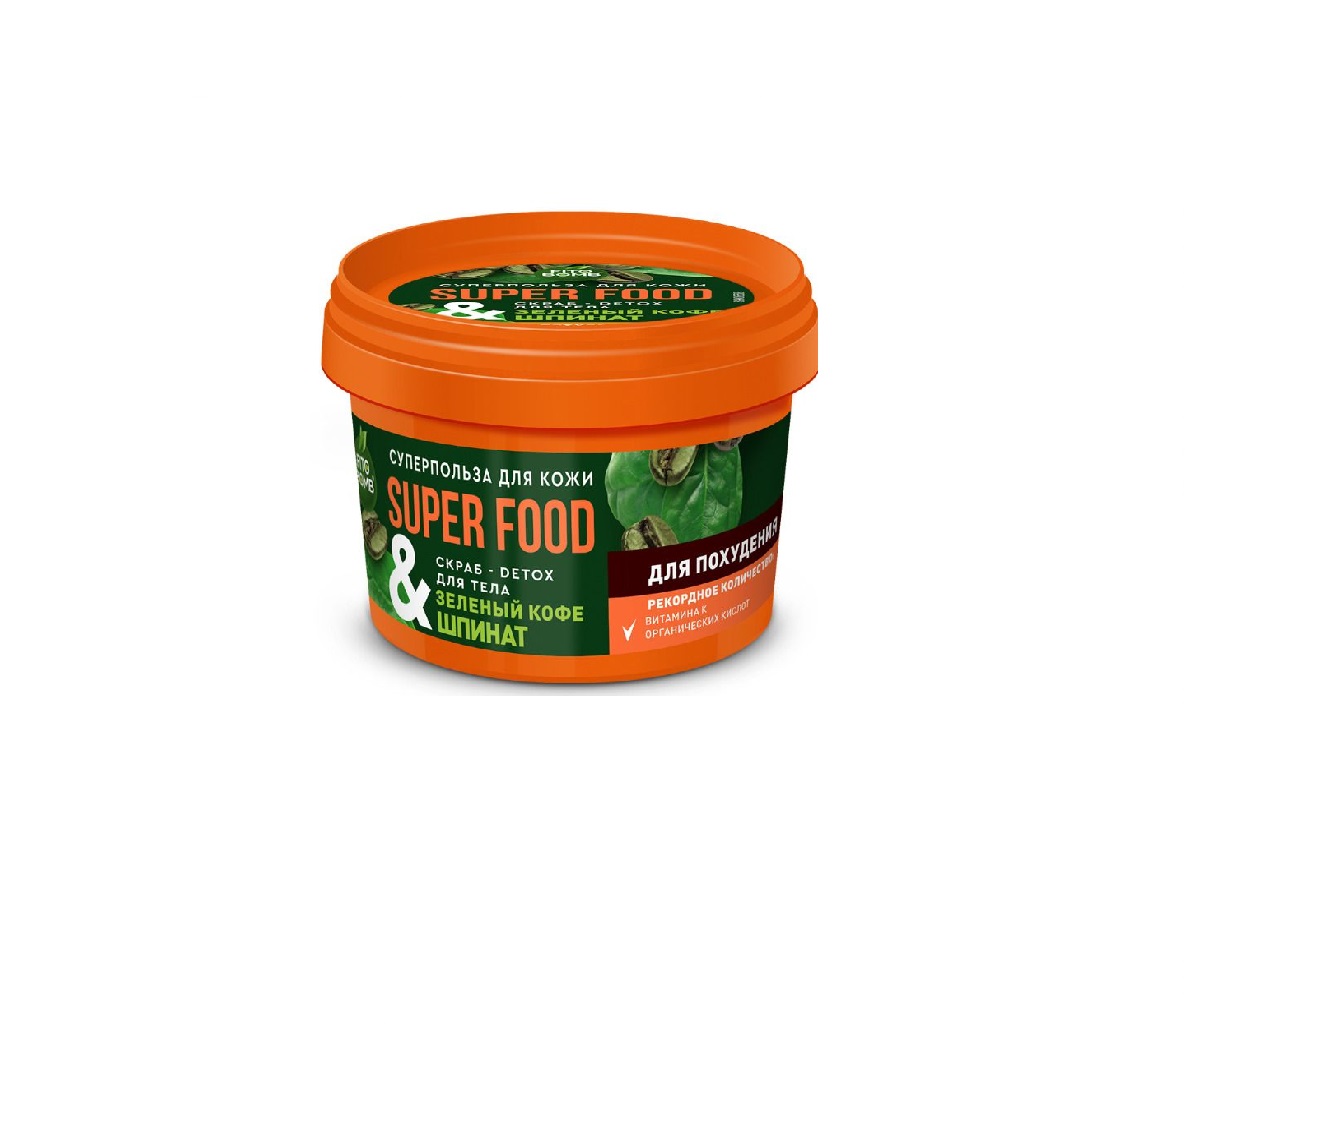 Скраб для тела Fito Косметик Super Food, Зеленый кофе и Шпинат 100г х 3 шт. шпинат стоик